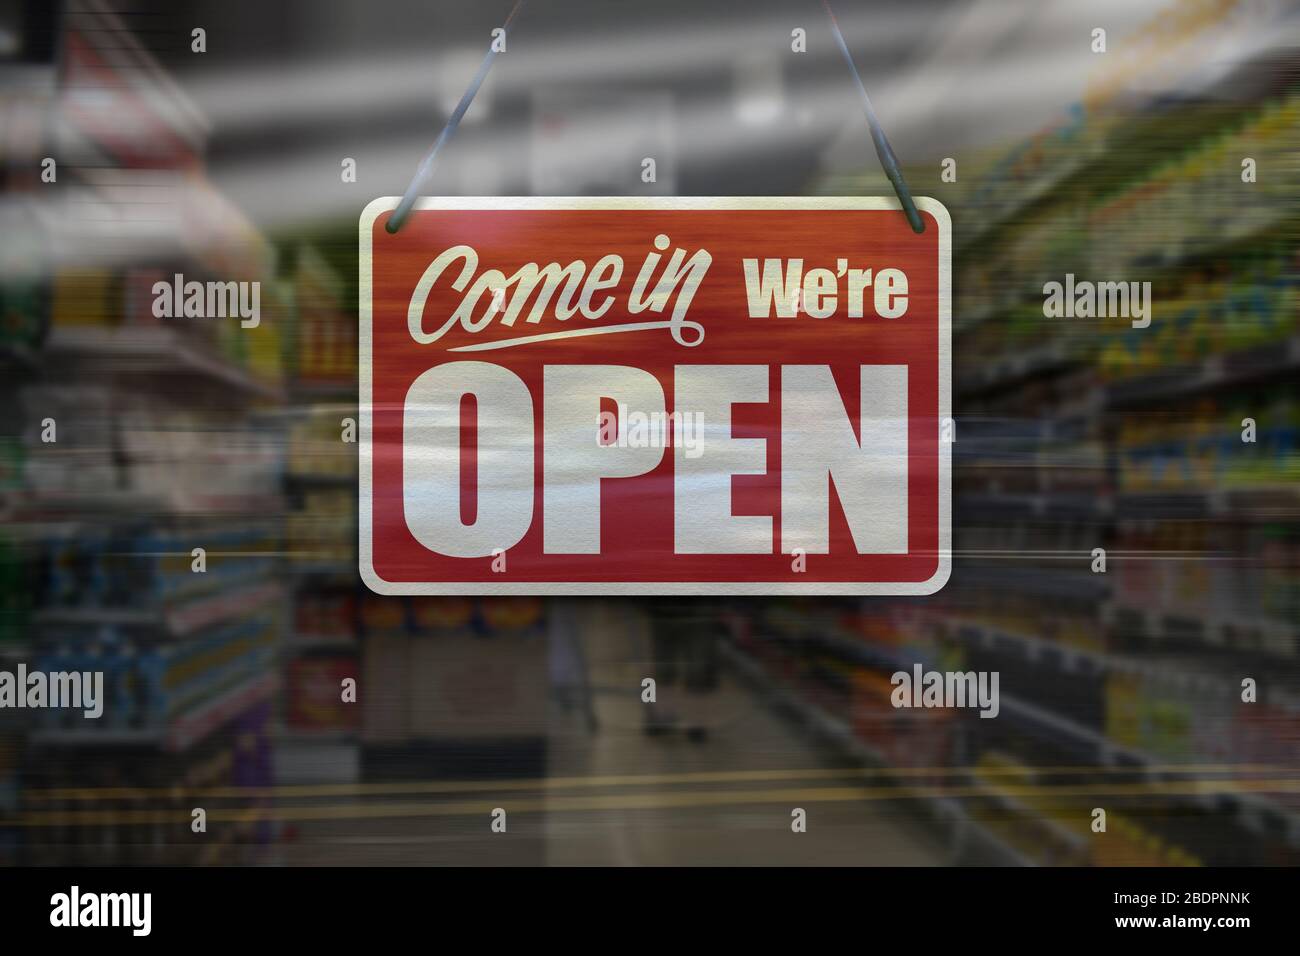 Un segno di affari che dice 'come in We're Open' sul supermercato o la finestra del minimarket. Foto Stock